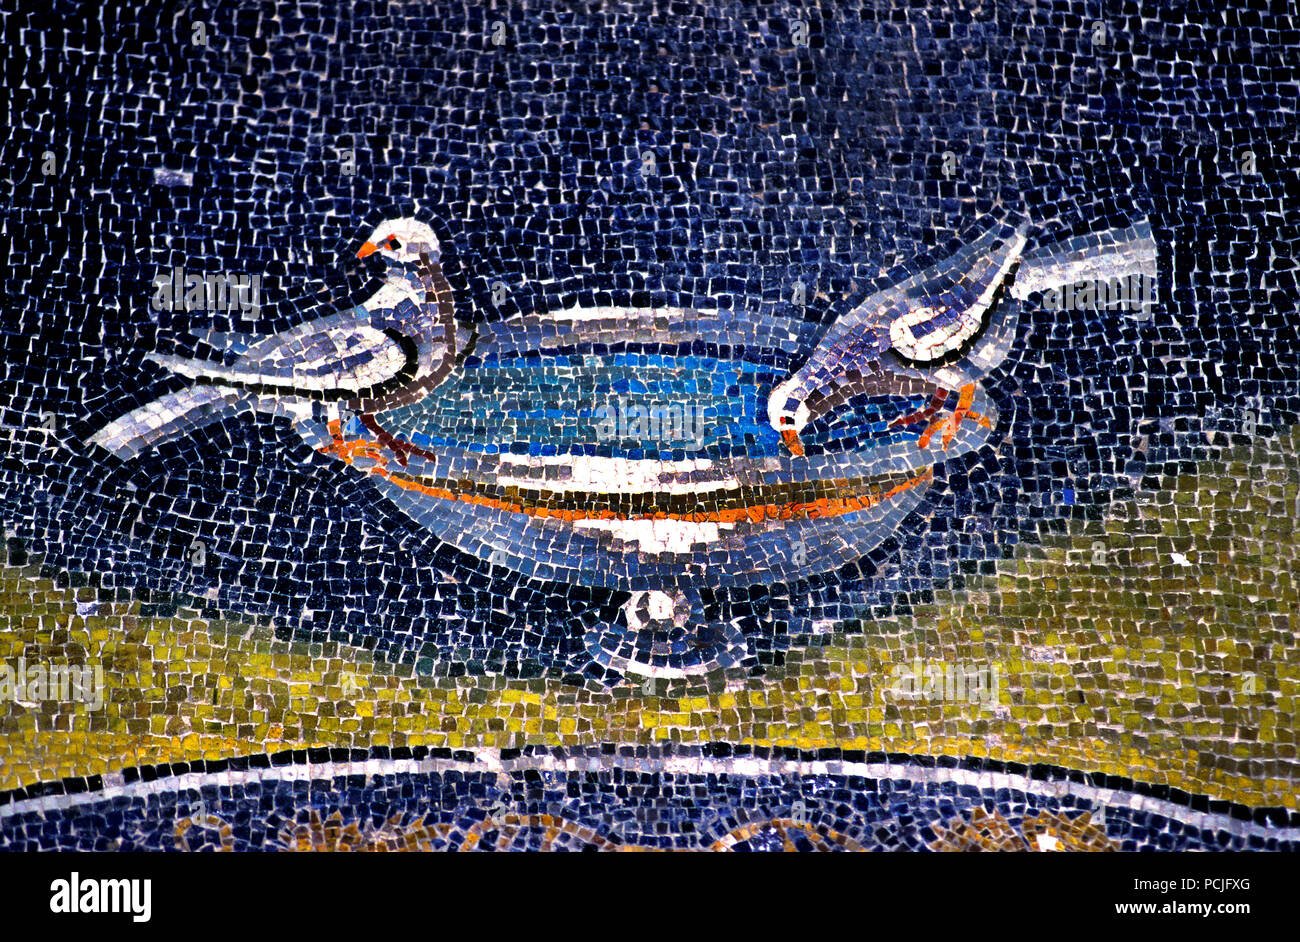 Heiligen Geist im Mausoleum der Galla Placidia in Ravenna (386 - 450 AD) Mosaiken (späte römische und byzantinische Architektur,) Emilia-Romagna - Nördliche Italien. (UNESCO-Weltkulturerbe) Taube, Stockfoto